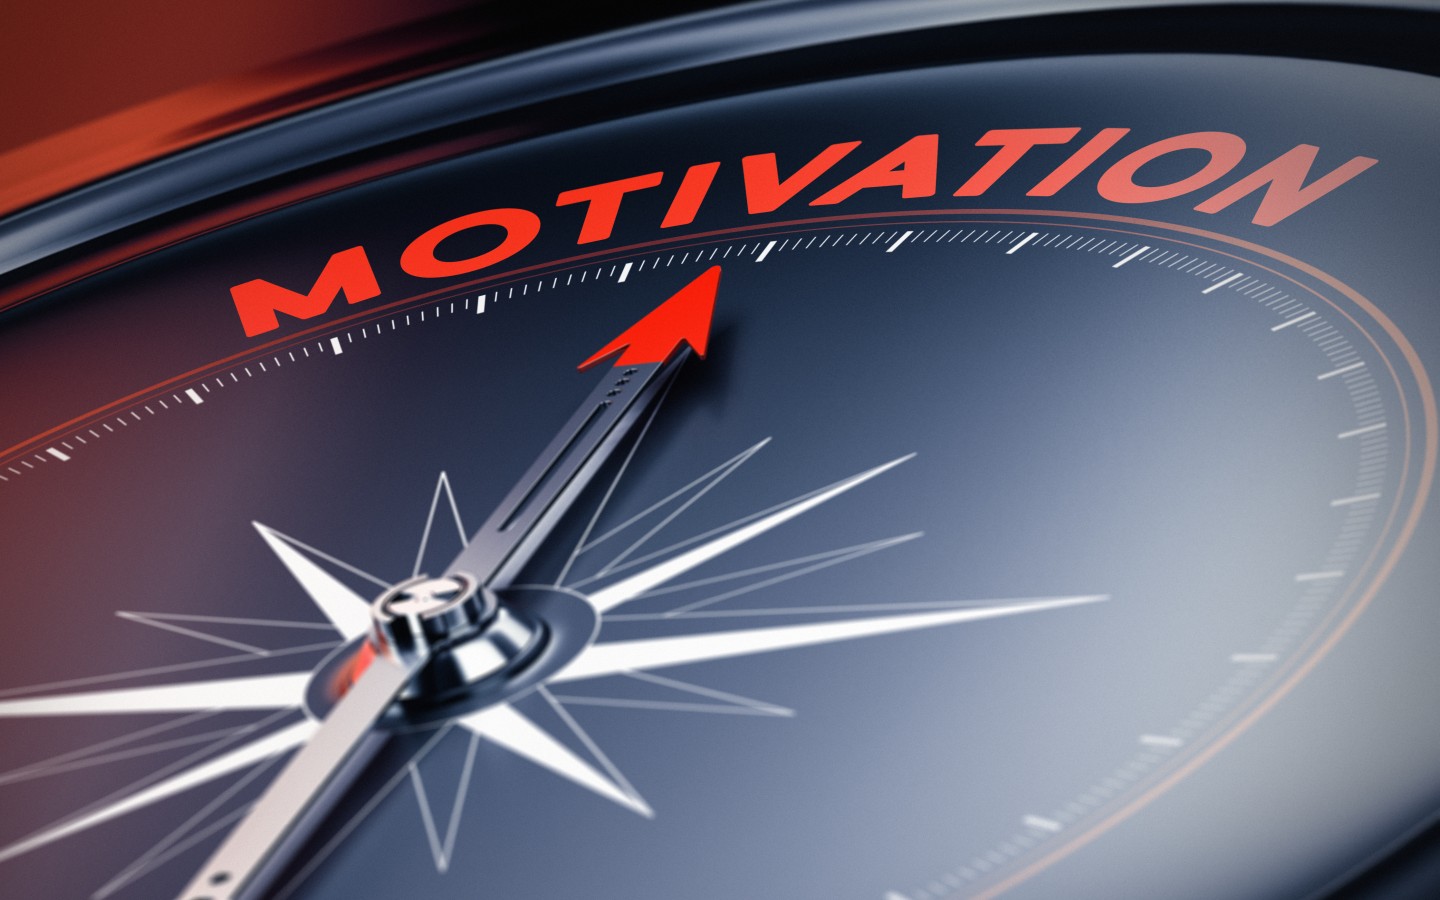 Inspirational Compass Motivational Wallpaper 007